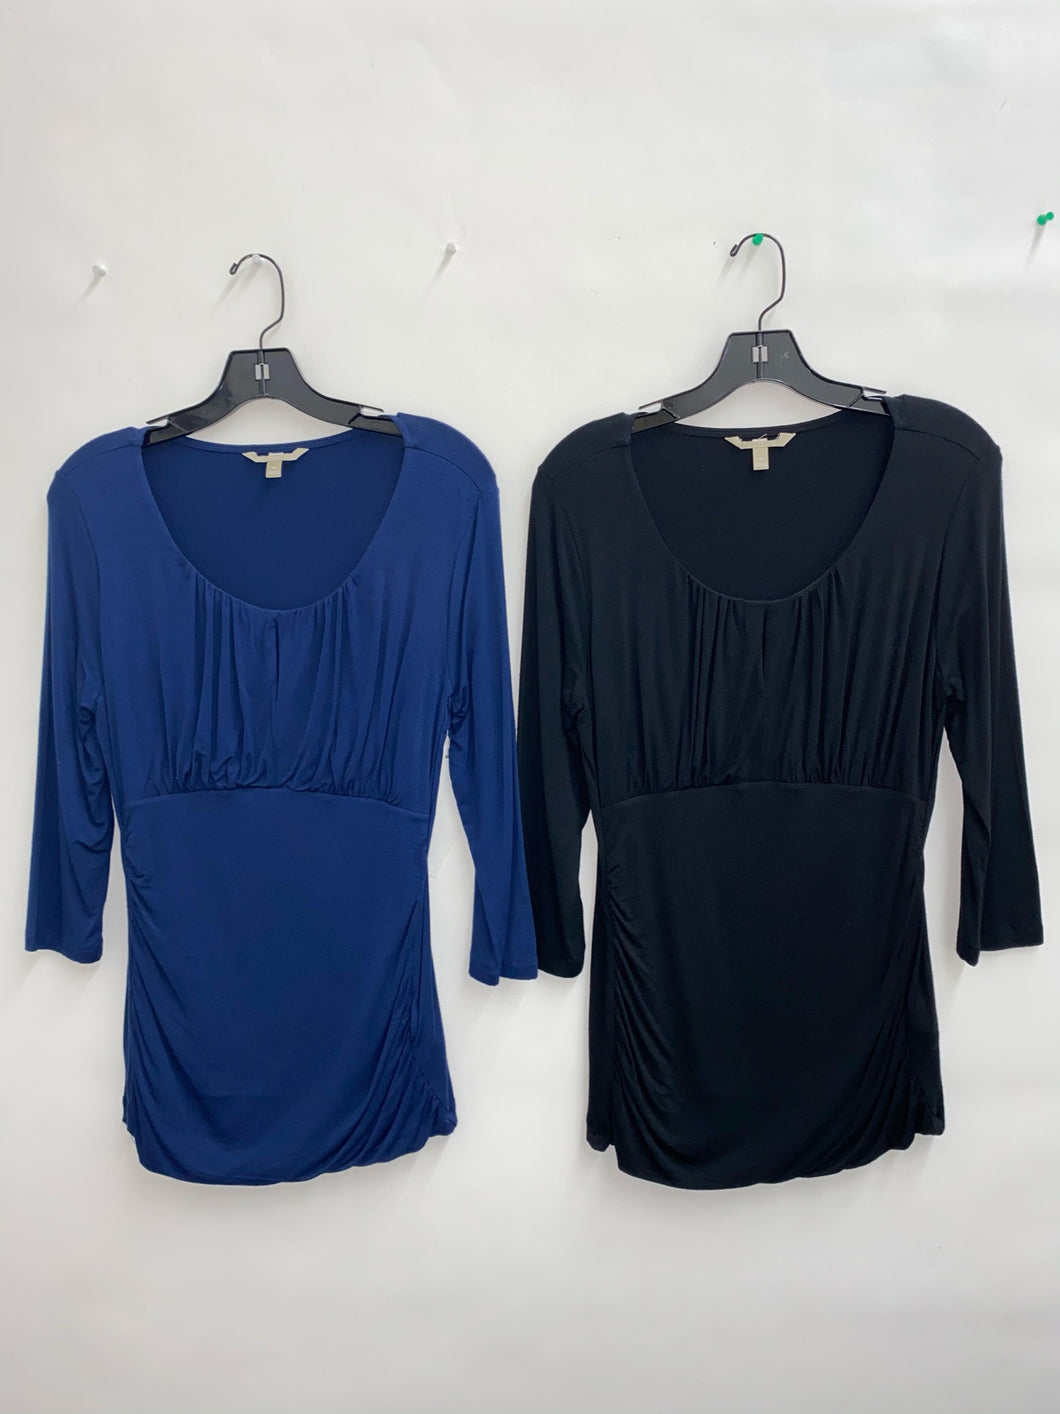 Blue & Black Long Sleeve (24 pack)